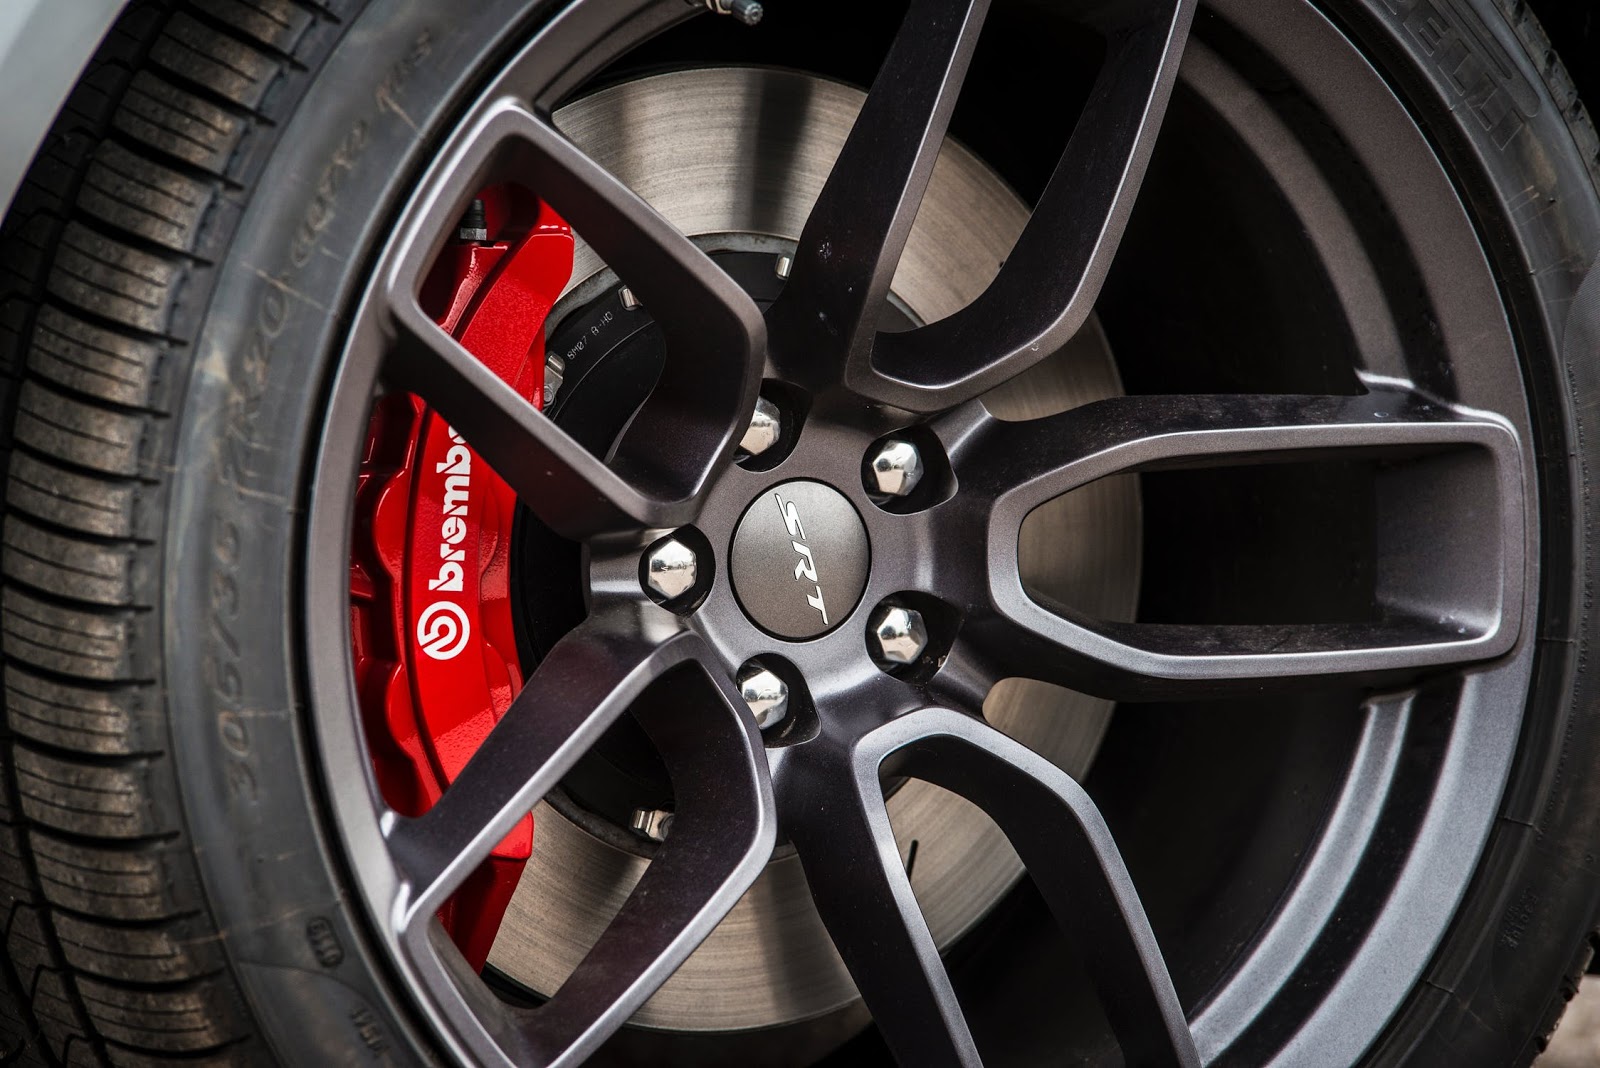 A close-up of a car wheel.